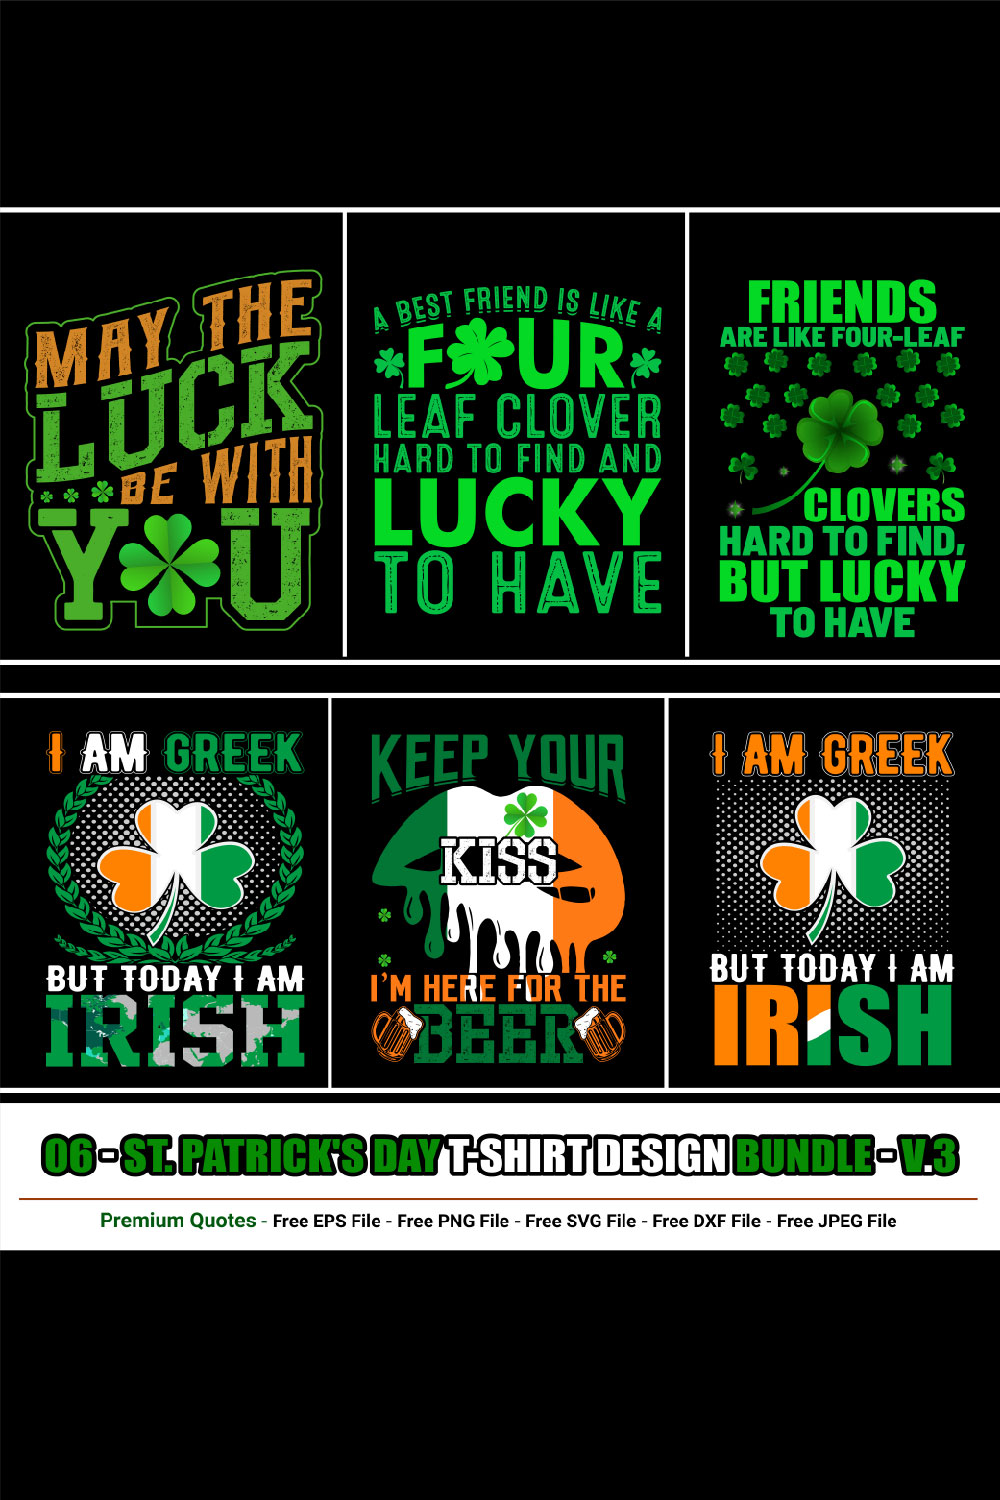 St Patrick’s Day T-shirt Design Bundle pinterest preview image.